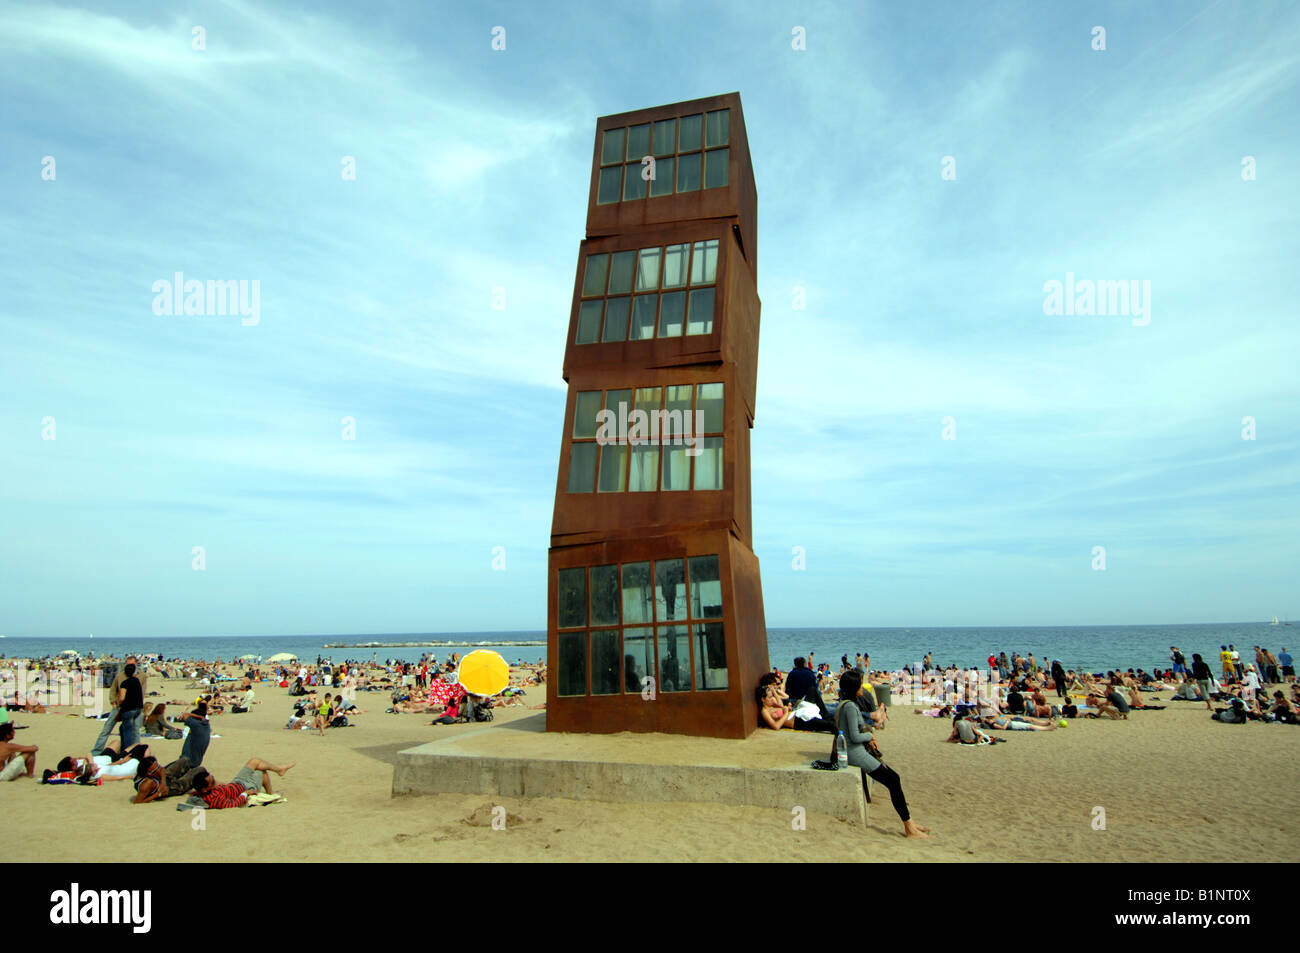 La plage de Barcelone, Espagne, l'art moderne sculpture 'une Homentage la Barceloneta' par Rebecca Horn Banque D'Images